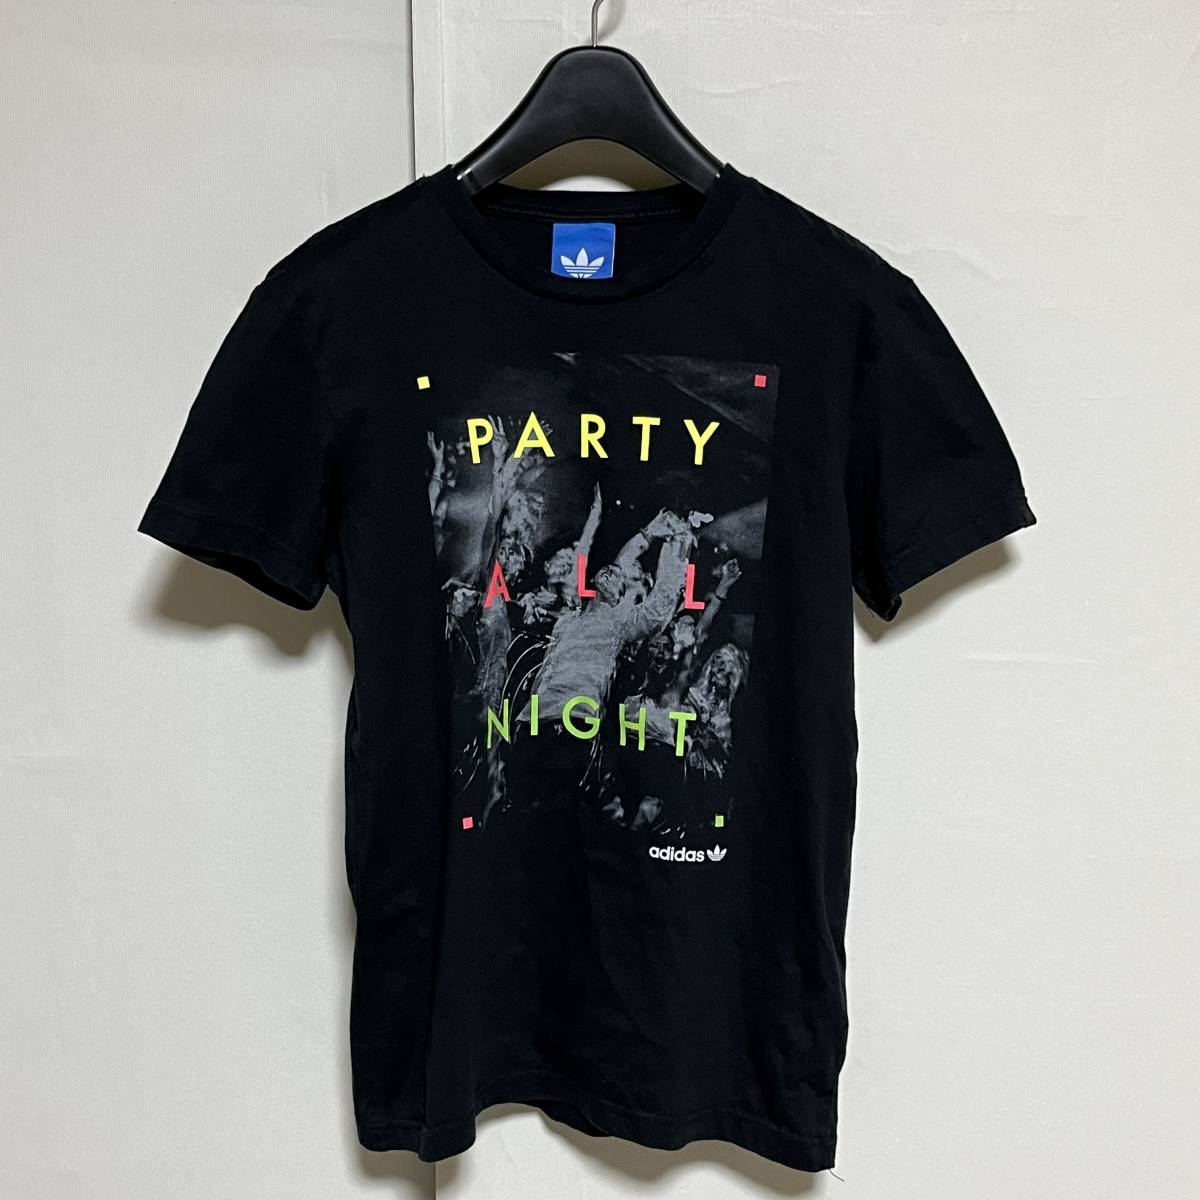 adidas Originals アディダス オリジナルス PARTY ALL NIGHT Tシャツ 黒 M 美品 管理B1394